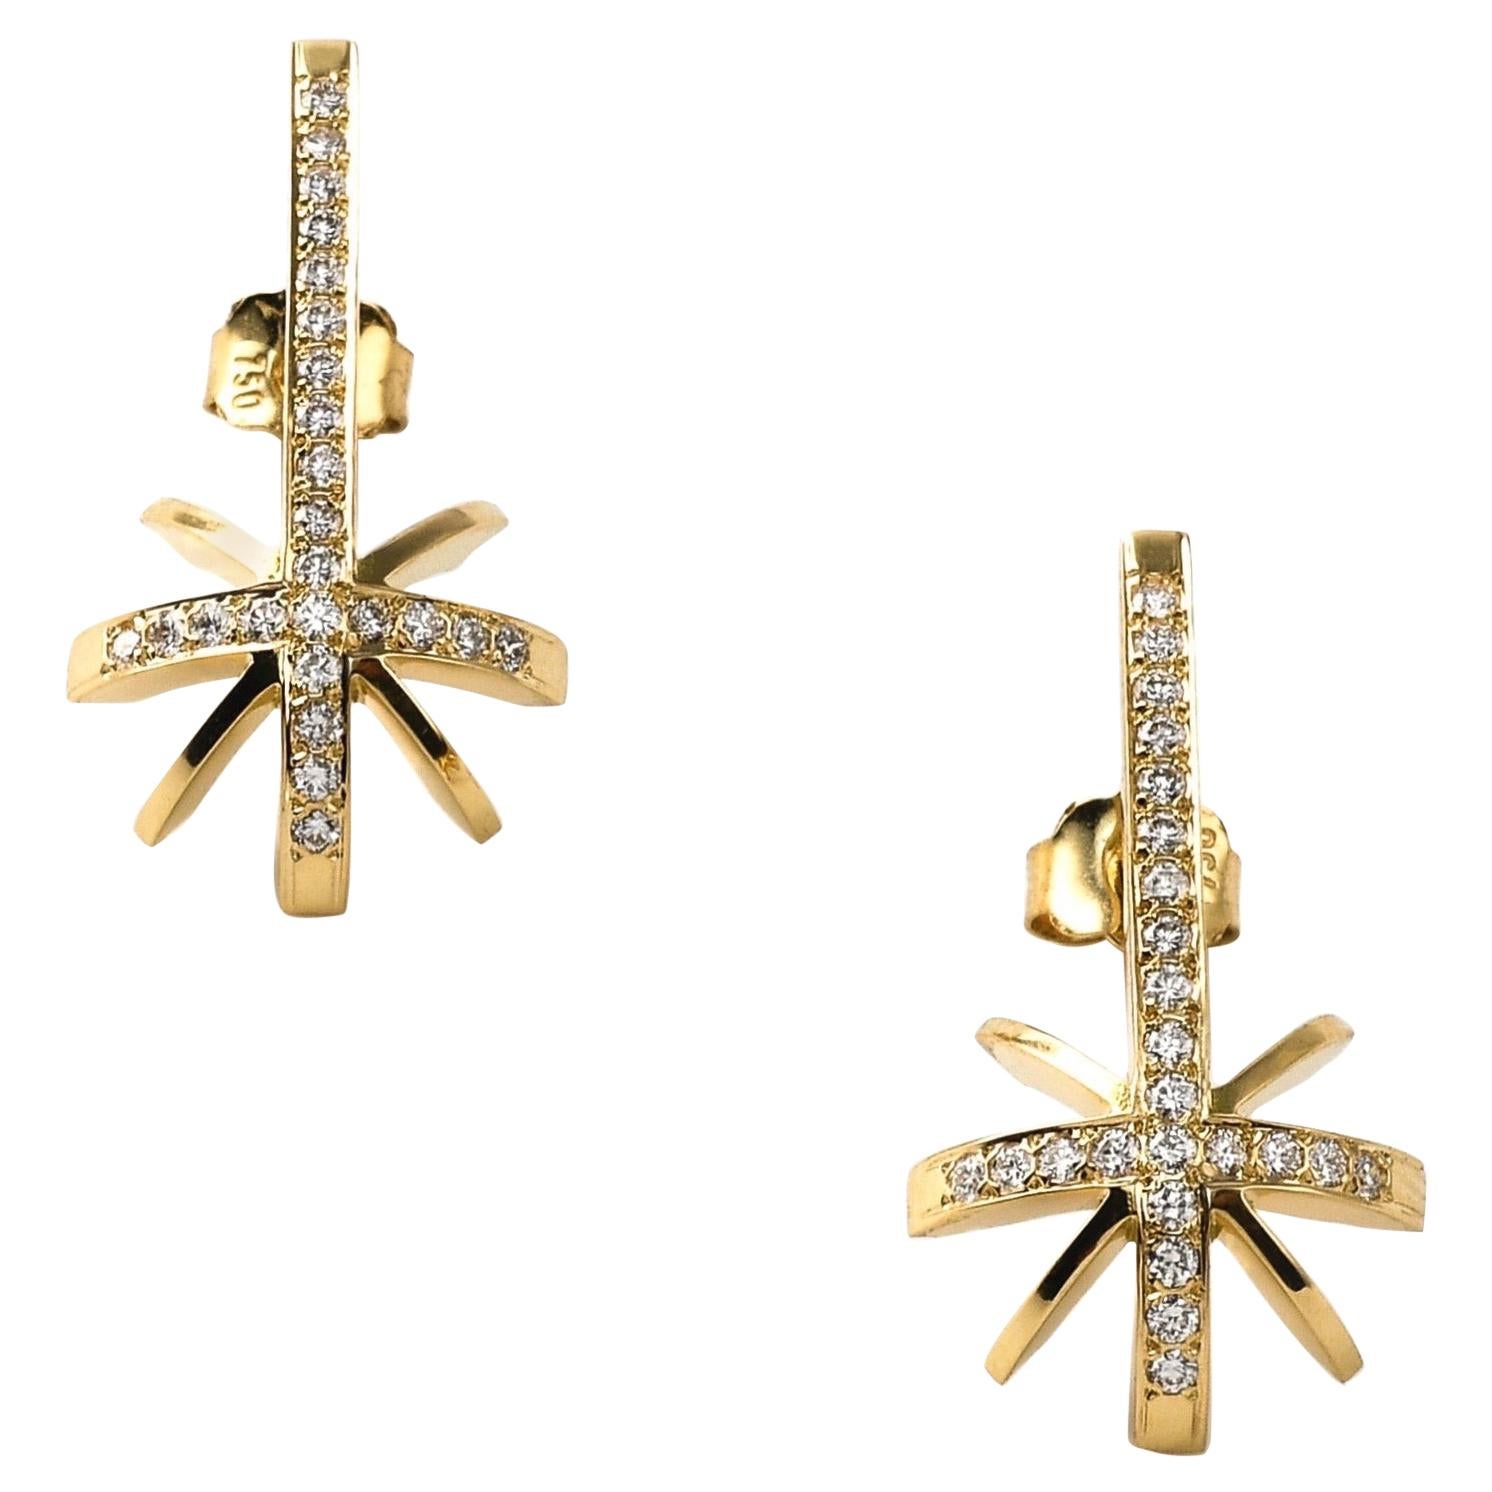 Boucles d'oreilles sculpturales contemporaines en forme d'étoile de chasse en or jaune 18 carats et diamants blancs